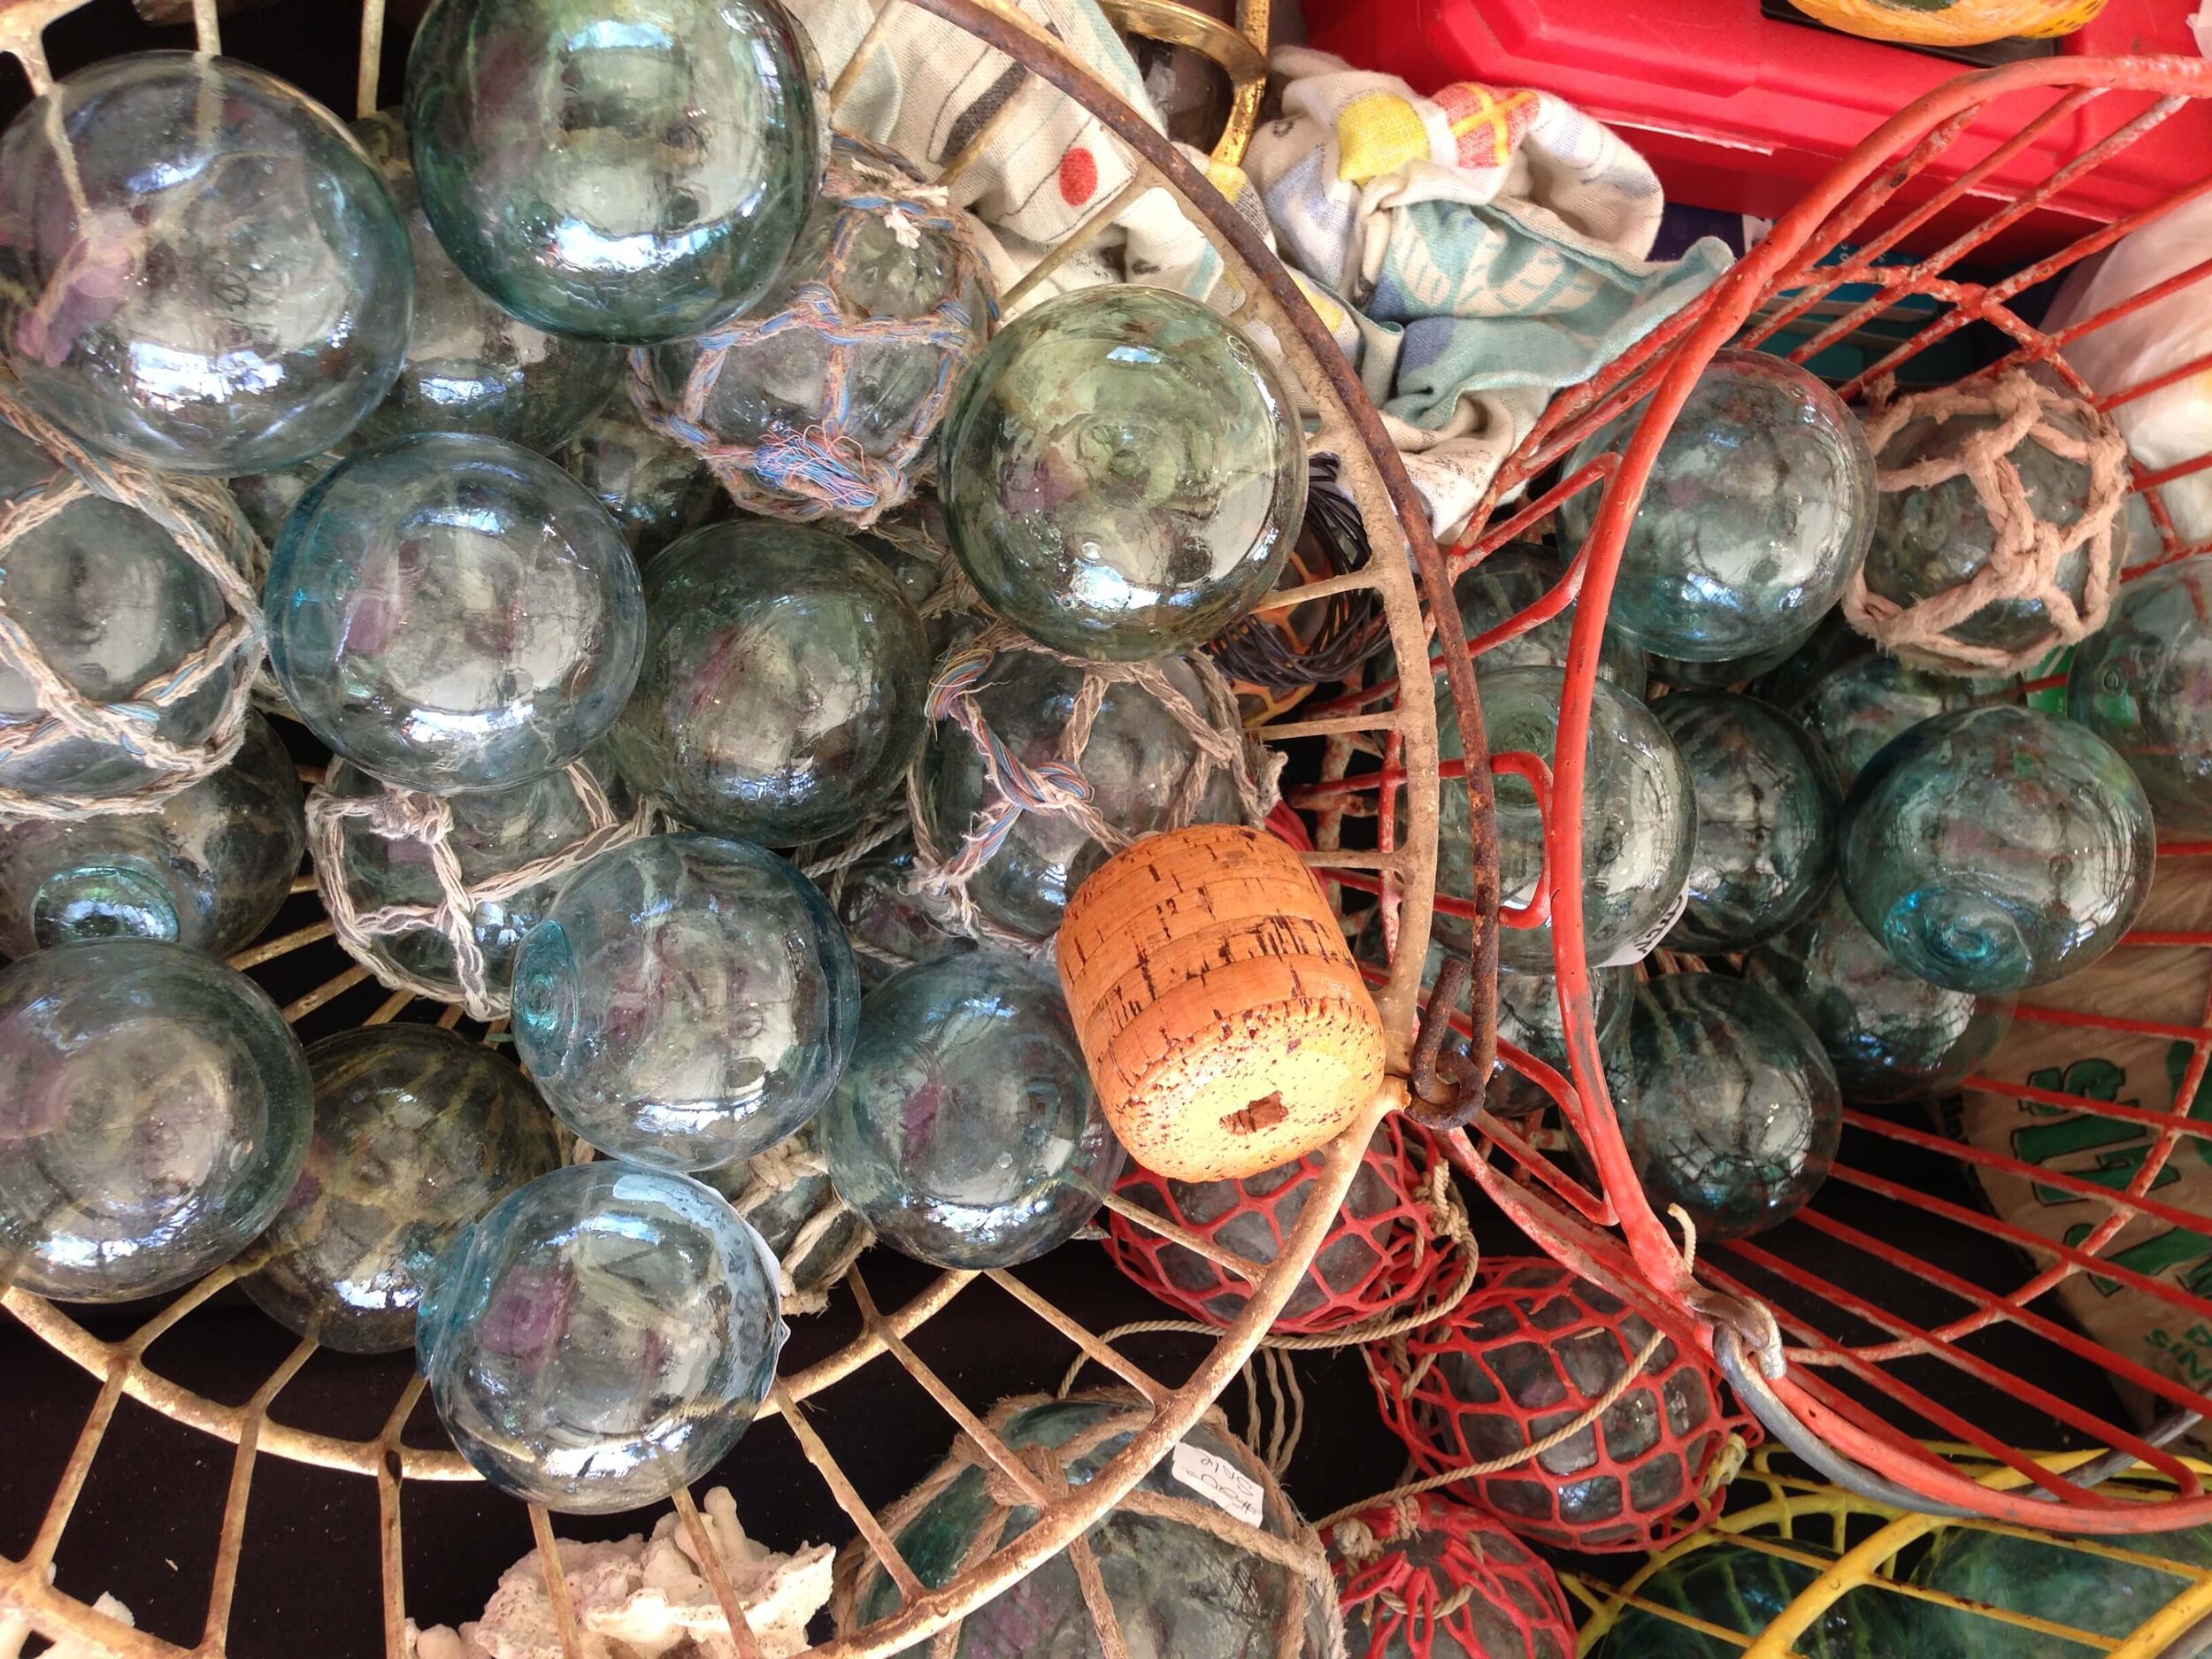 https://images.squarespace-cdn.com/content/v1/4fcf5c8684aef9ce6e0a44b0/1621115559445-4KVM2F3IP51O026I0B6U/vintage+glass+fishing+buoys